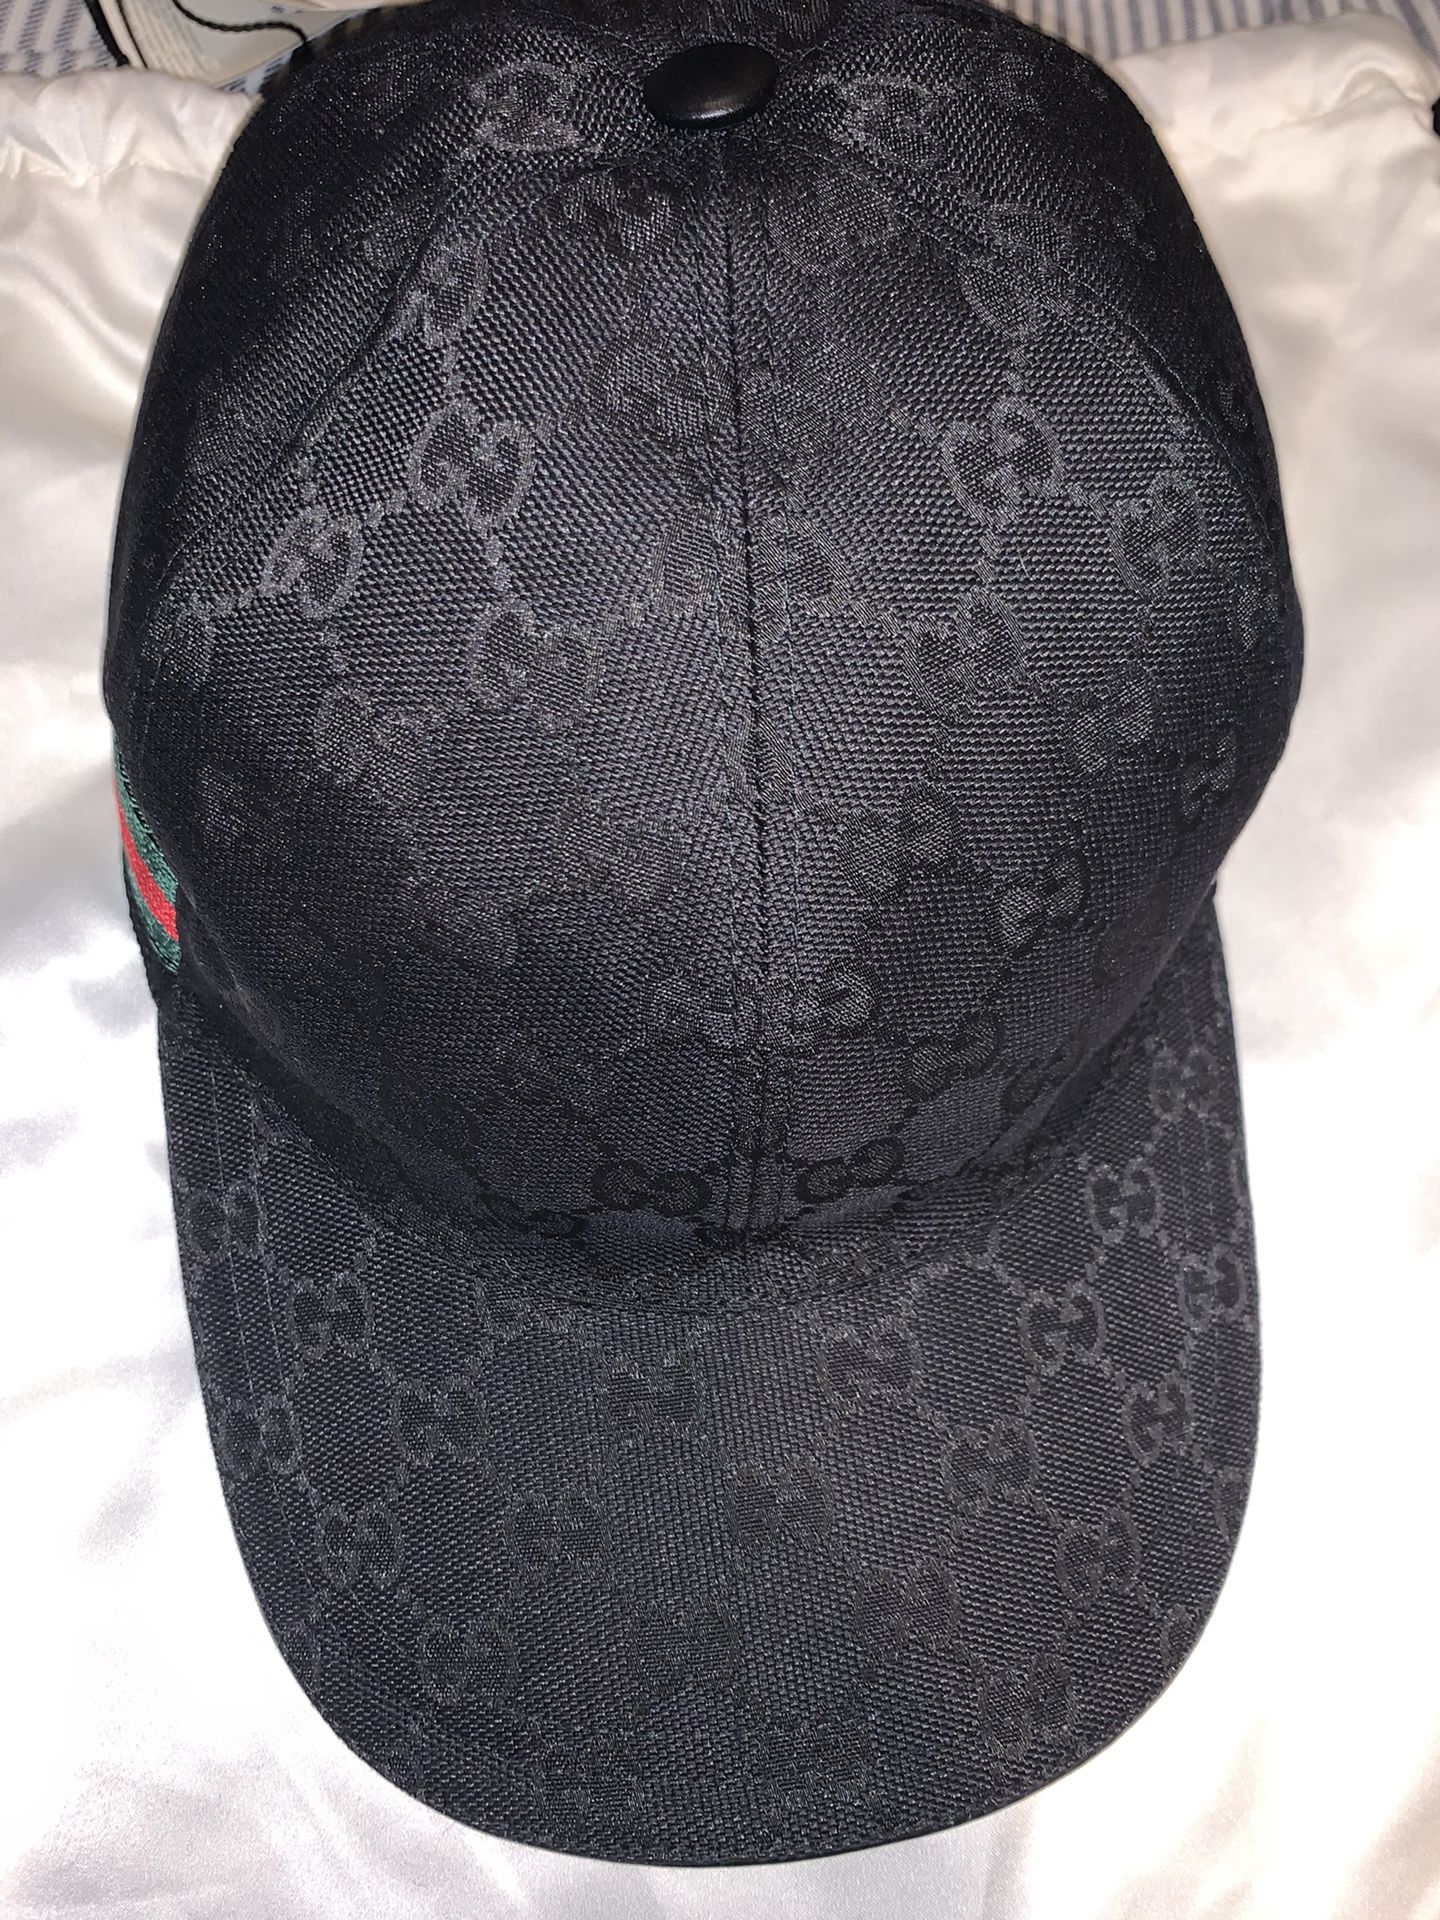 Gucci gg supreme baseball hat size large